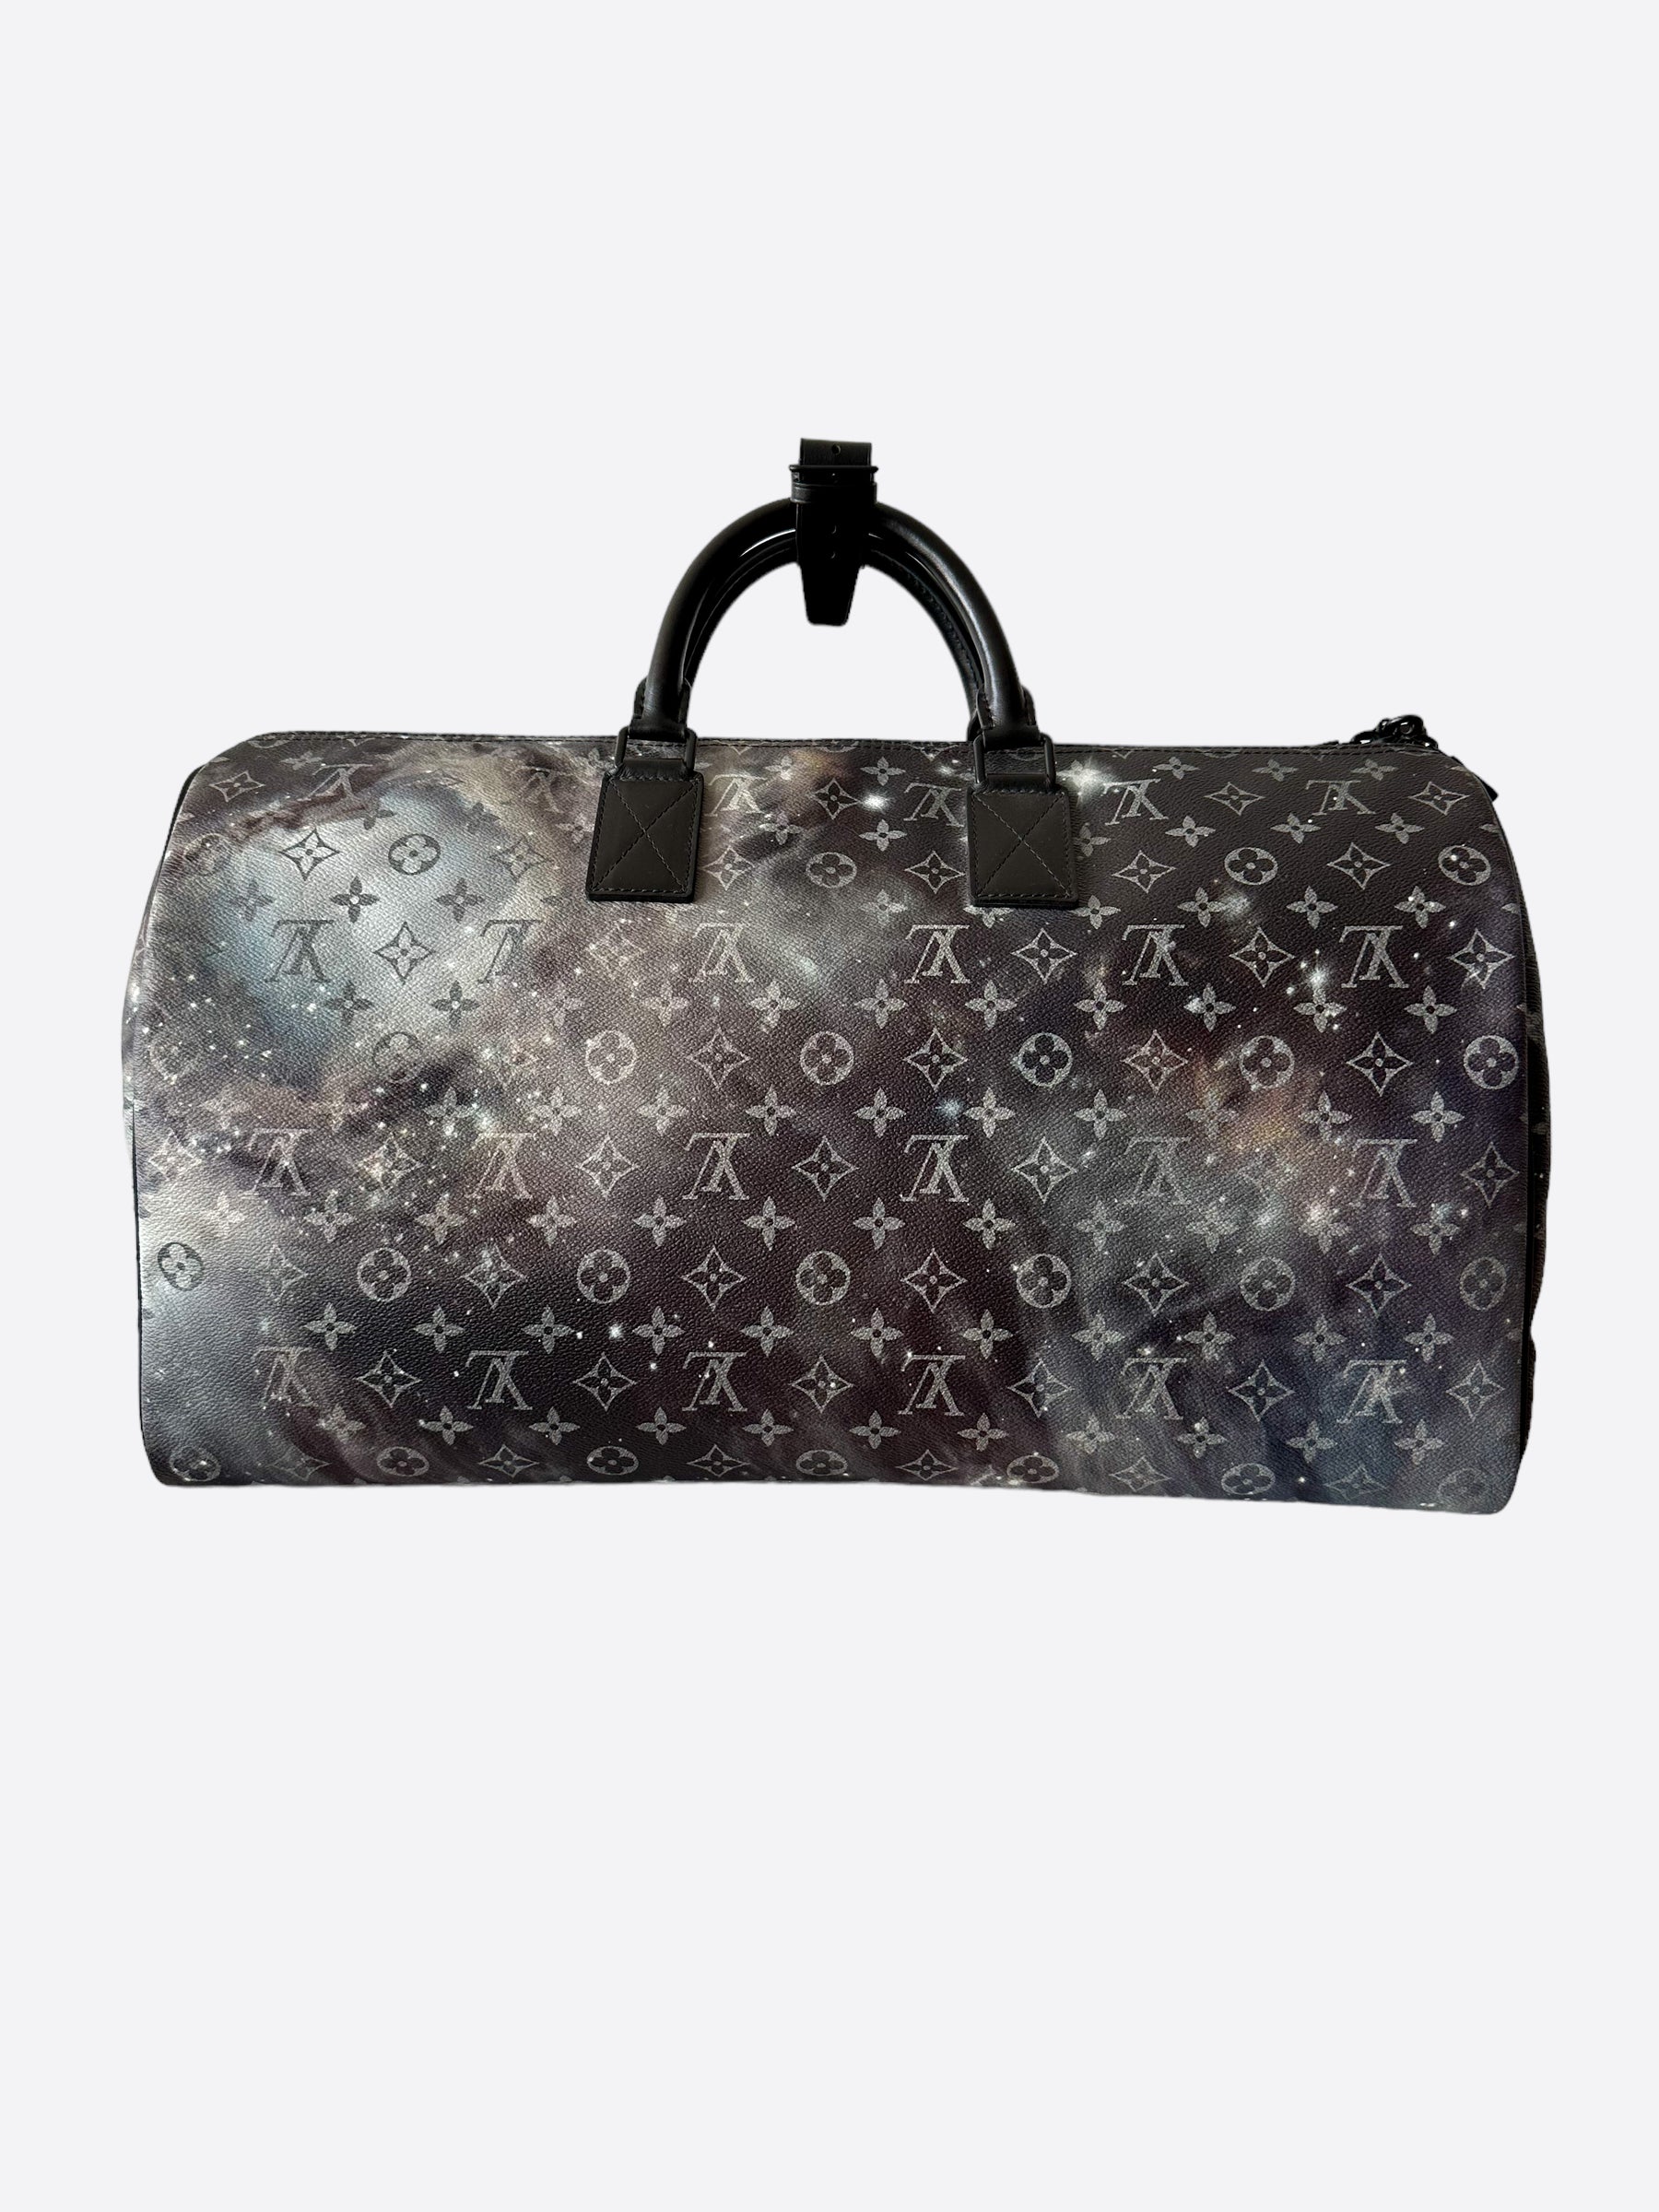 Louis Vuitton Keepol Bandriere 50 Monogram Galaxy Space Print